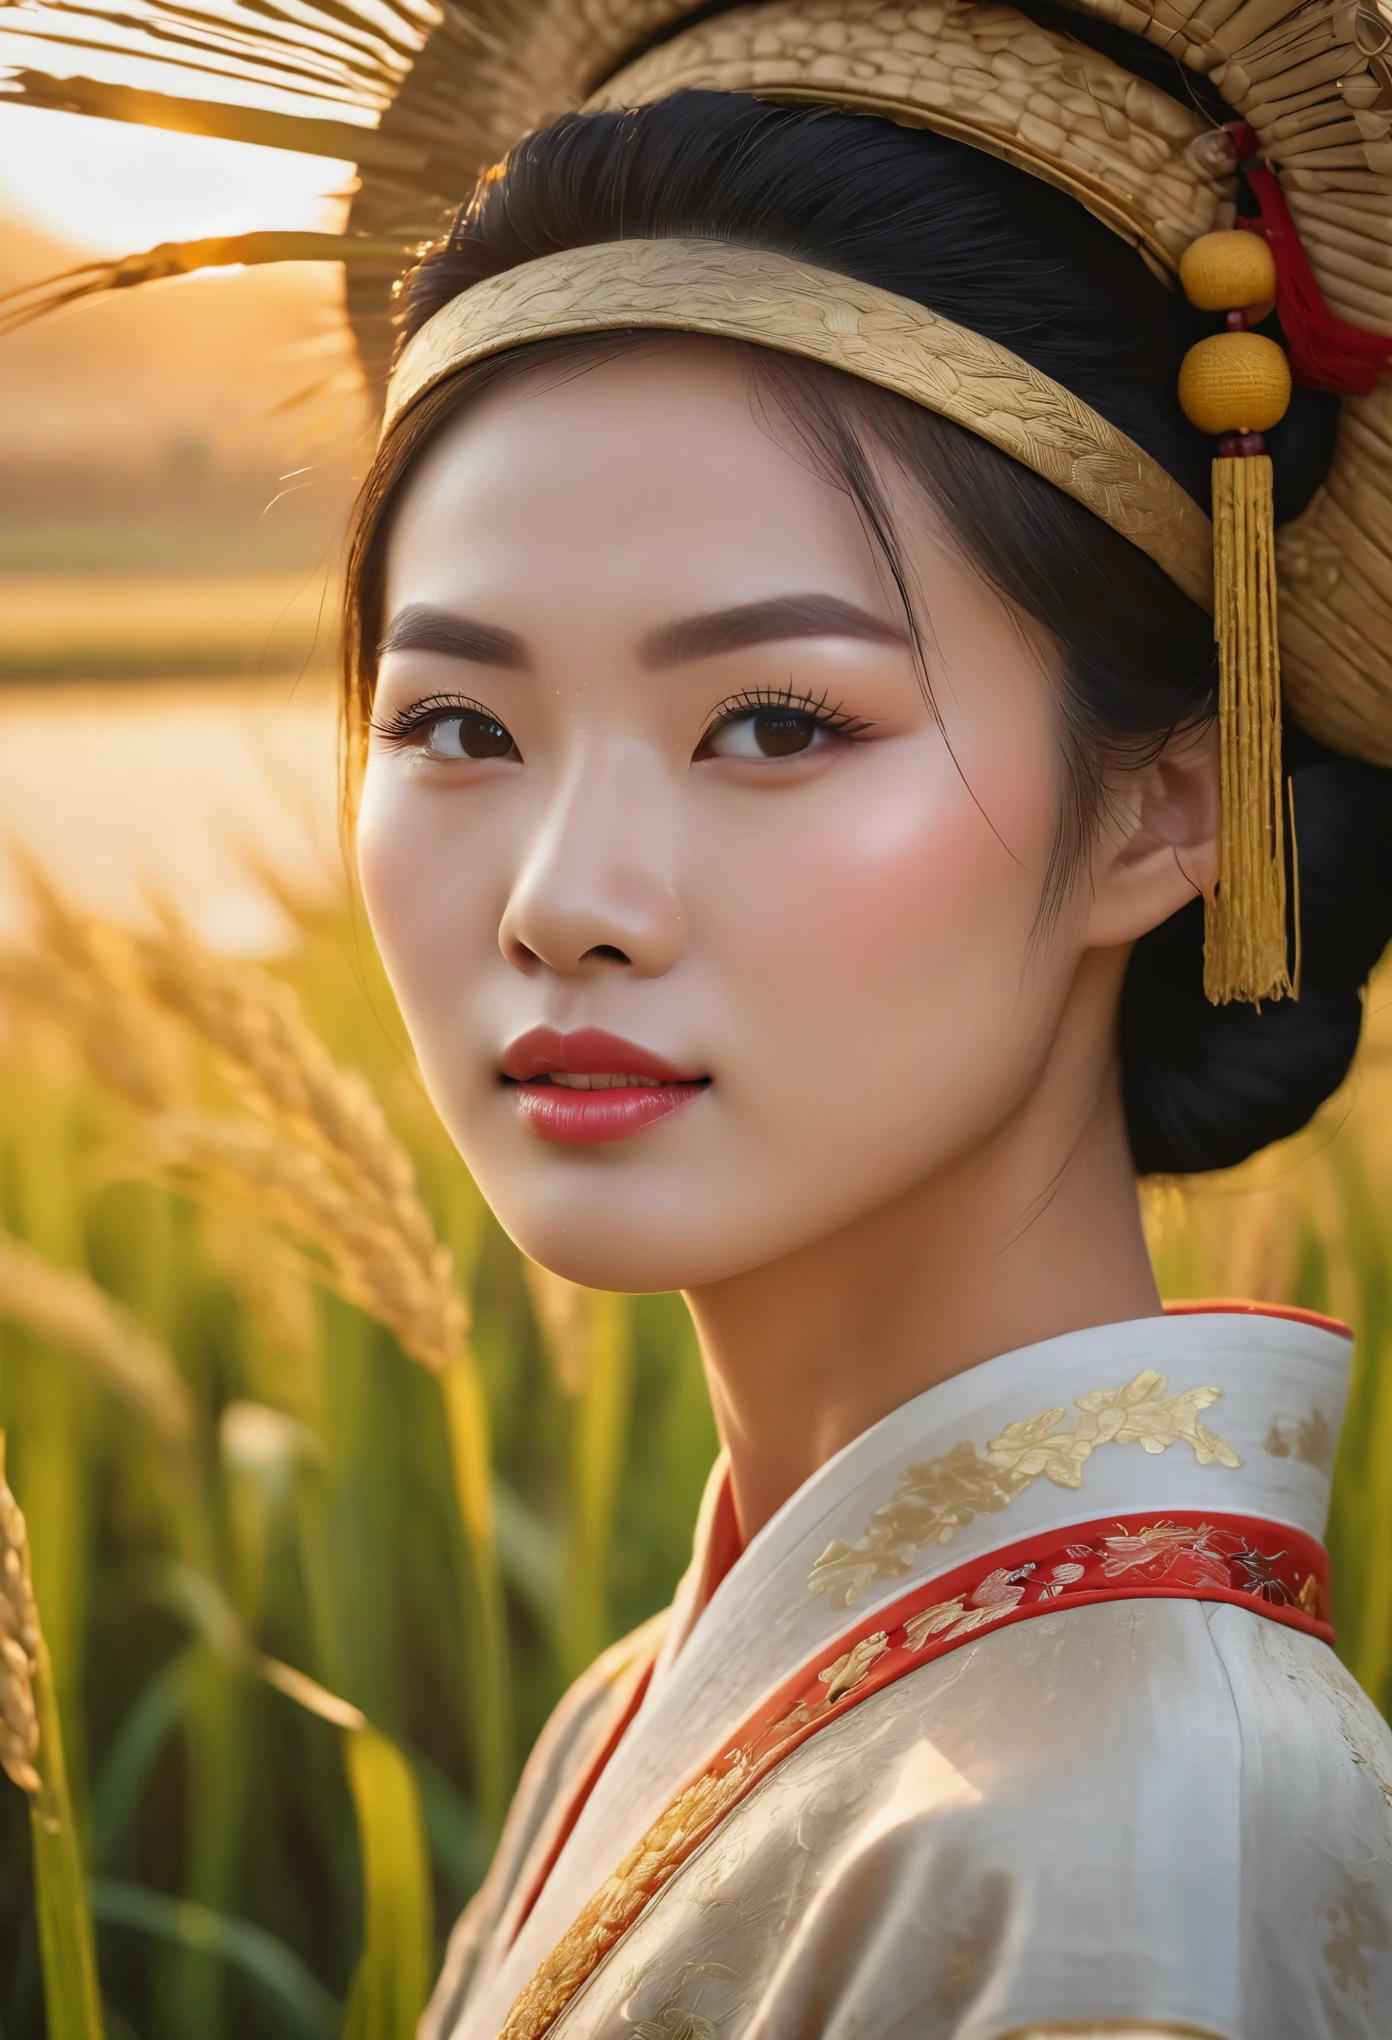 중국의 논 위로 아름다운 일출, 쌀을 수확하는 중국 농부들, 아름다운 디테일한 눈, 아름답고 섬세한 입술, 매우 상세한 눈과 얼굴, 긴 속눈썹, 중국 전통 의상, 고요한 시골 풍경, 골든아워 조명, 따뜻한 색조, 소프트 포커스, 사실적인, 8K, 높은 해상도, 걸작, 매우 상세한, 전문 사진, 생생한 색상, 자연 채광, 영화적 구성